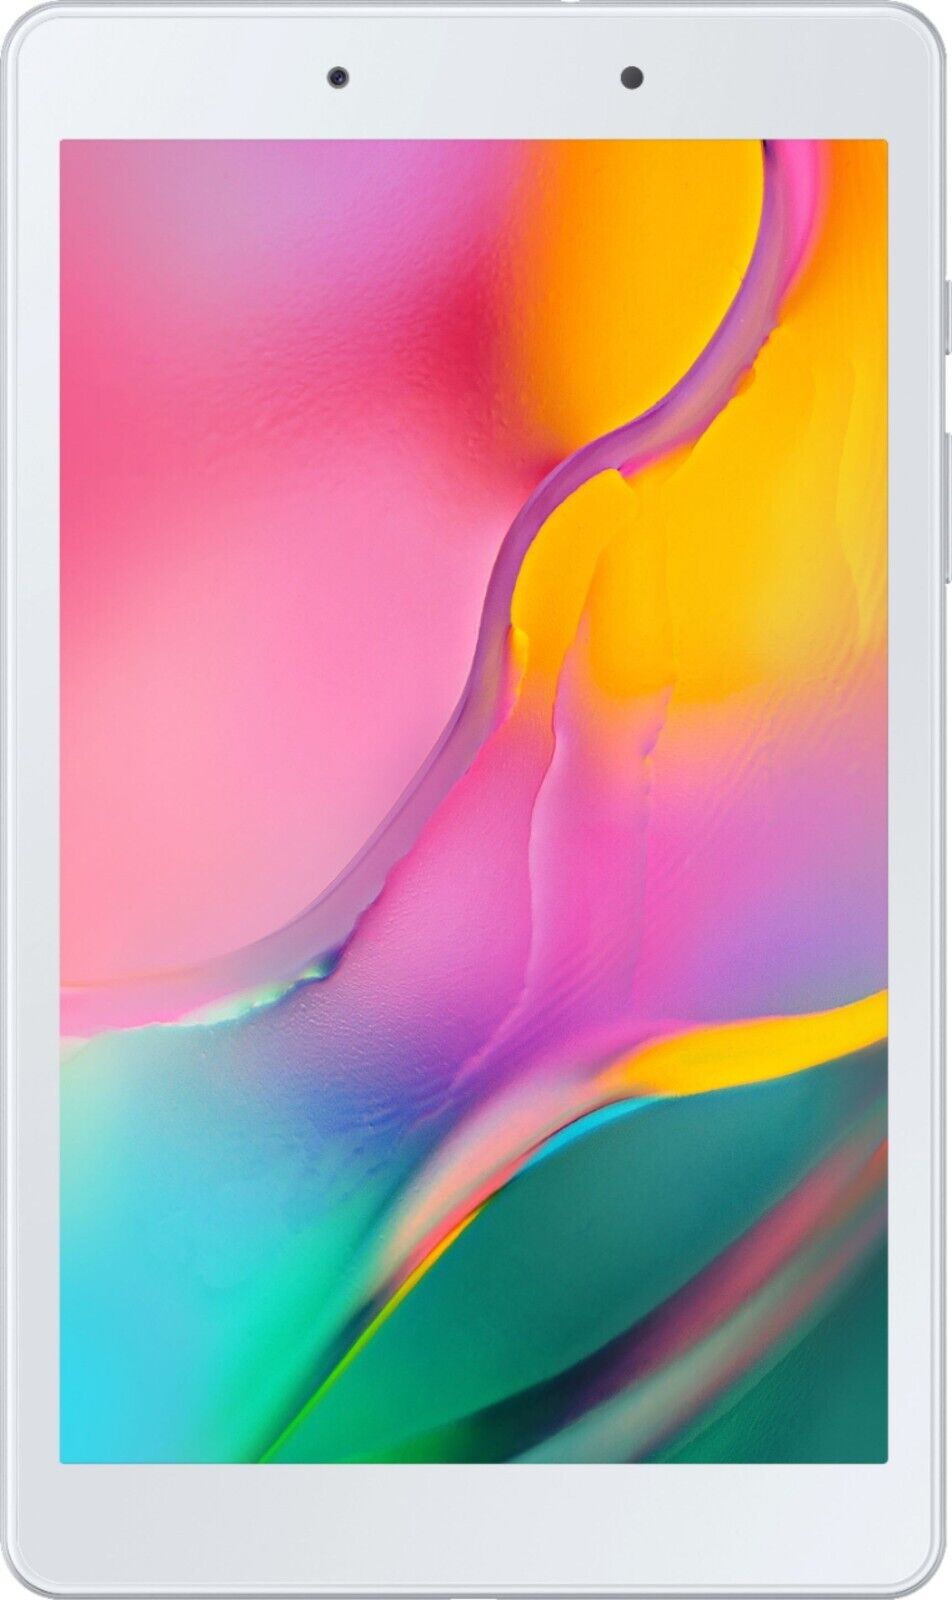 Galaxy Tab A 8.0 (2019) (2019) 32GB - Silver/Gray - (Wi-Fi)